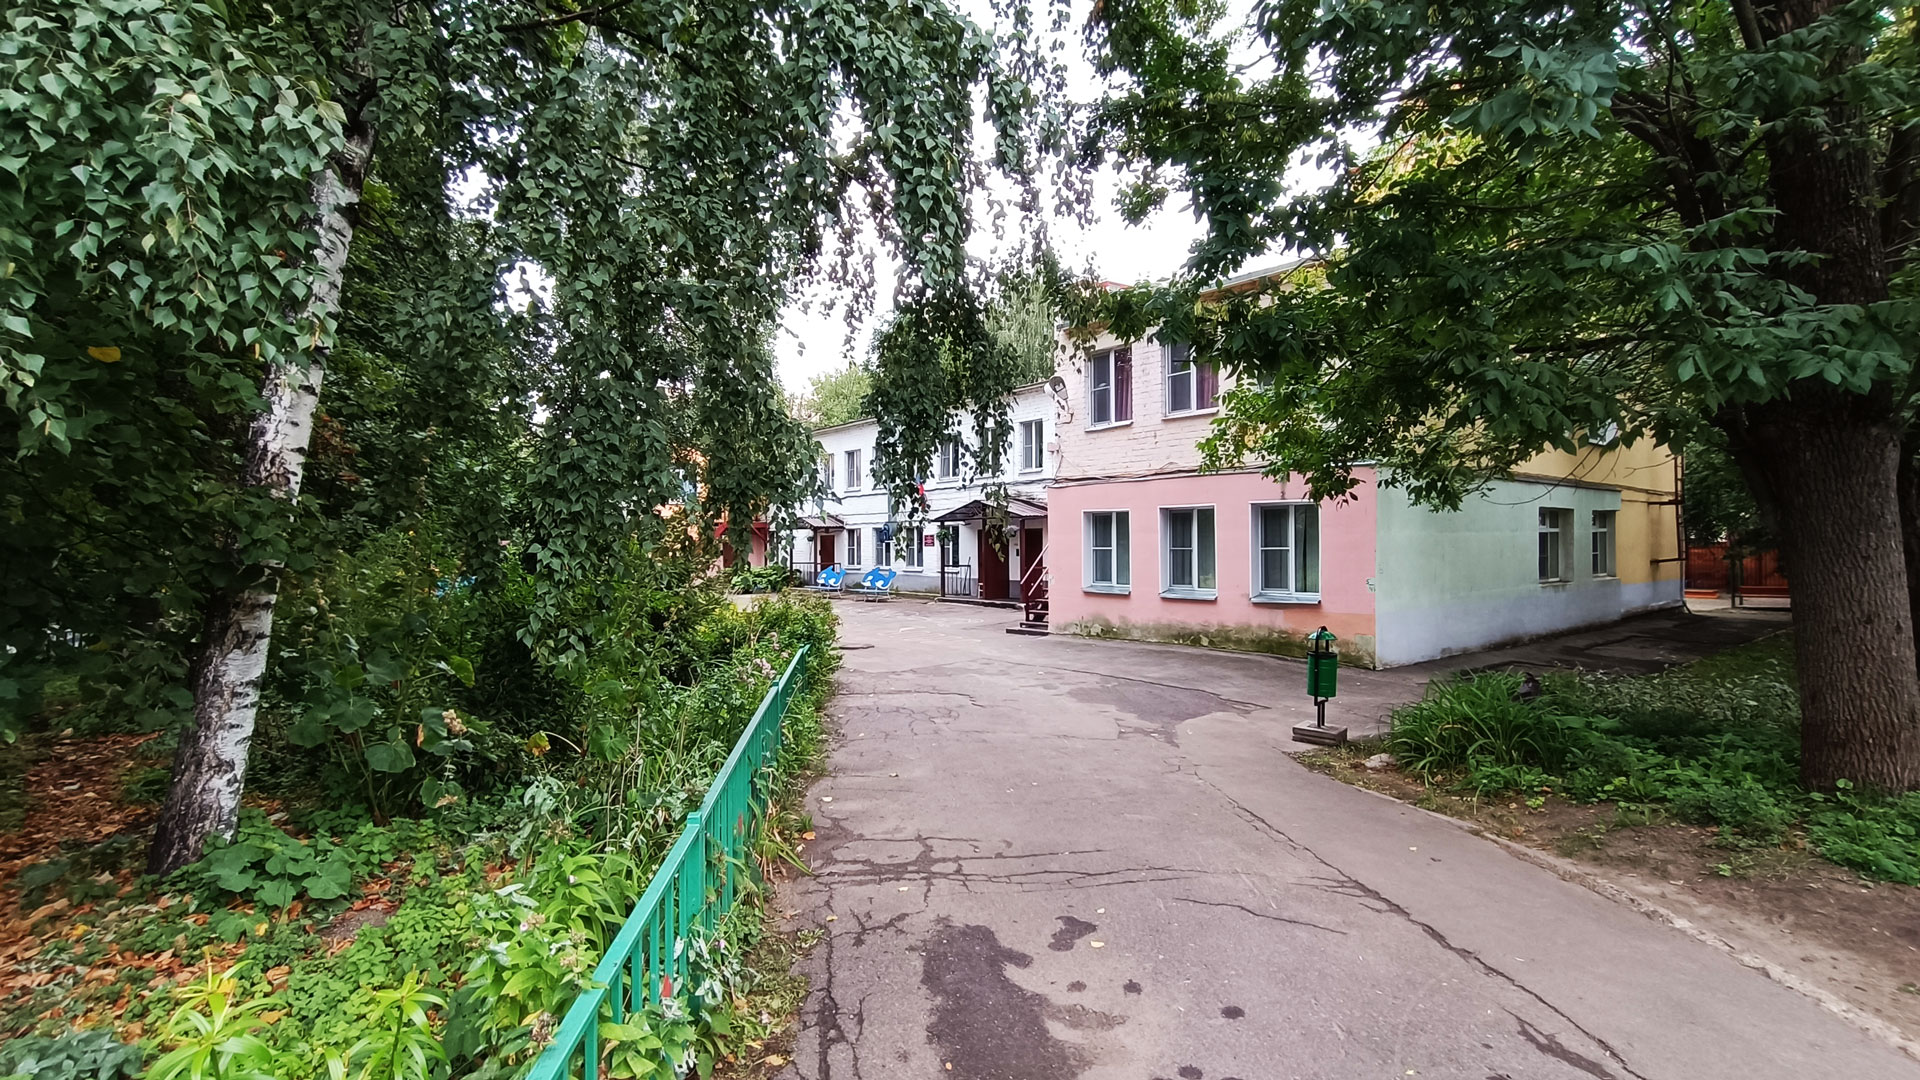 Детский сад 78 Ярославль: общий вид здания.